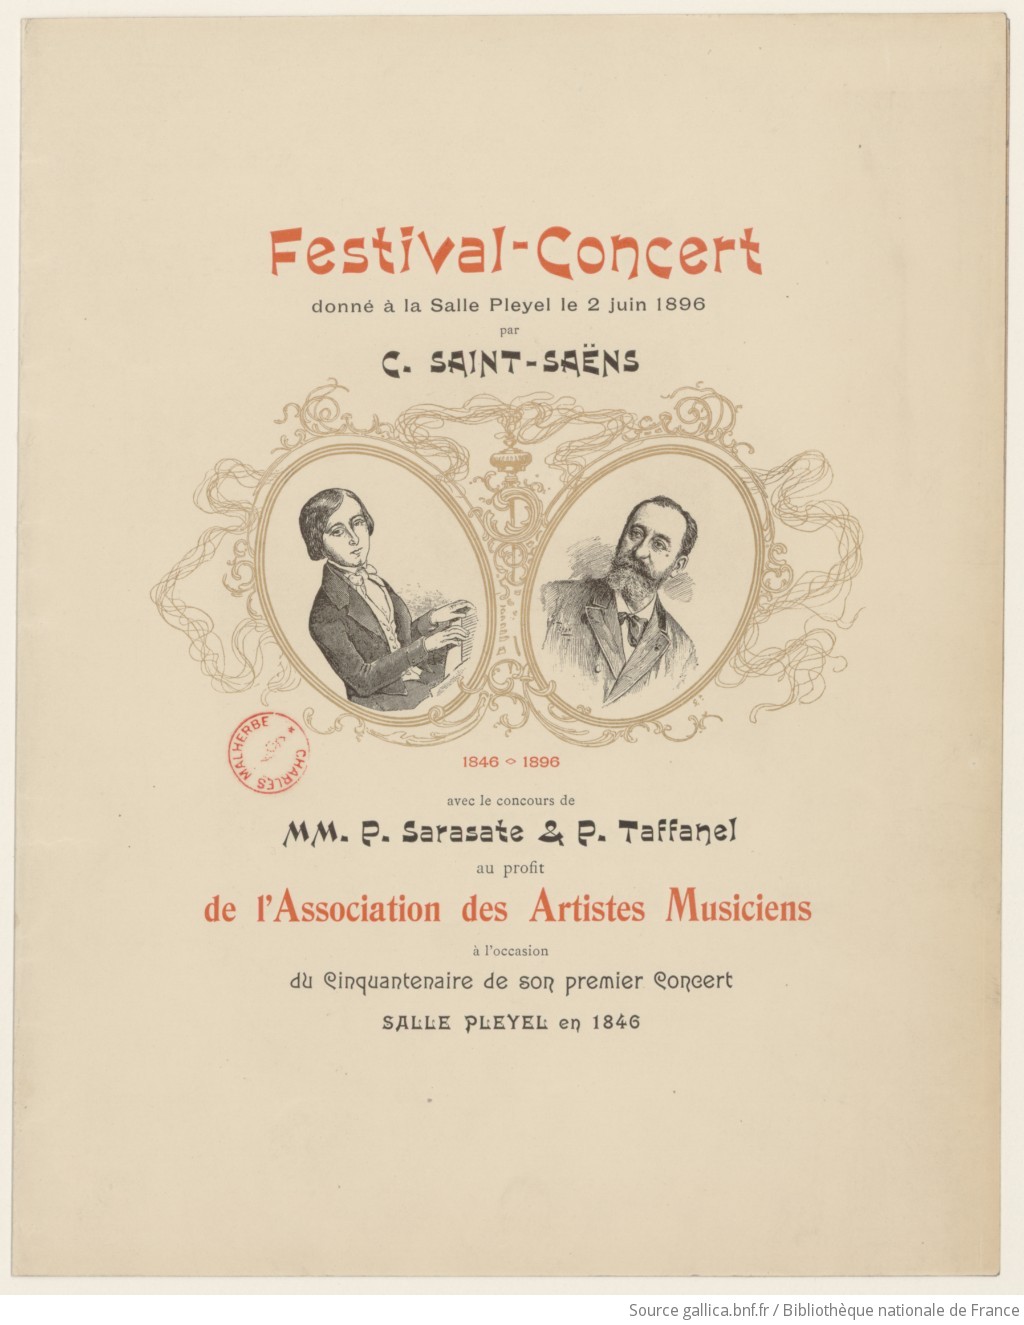 C. Saint-Saëns, 1846-1896 : Festival-Concert donné à la Salle Pleyel le 2 juin 1896 [...] avec le concours de MM. P. Sarasate et P. Taffanel [...] à l'occasion du cinquantenaire de son premier concert Salle Pleyel en 1846 / Tichon